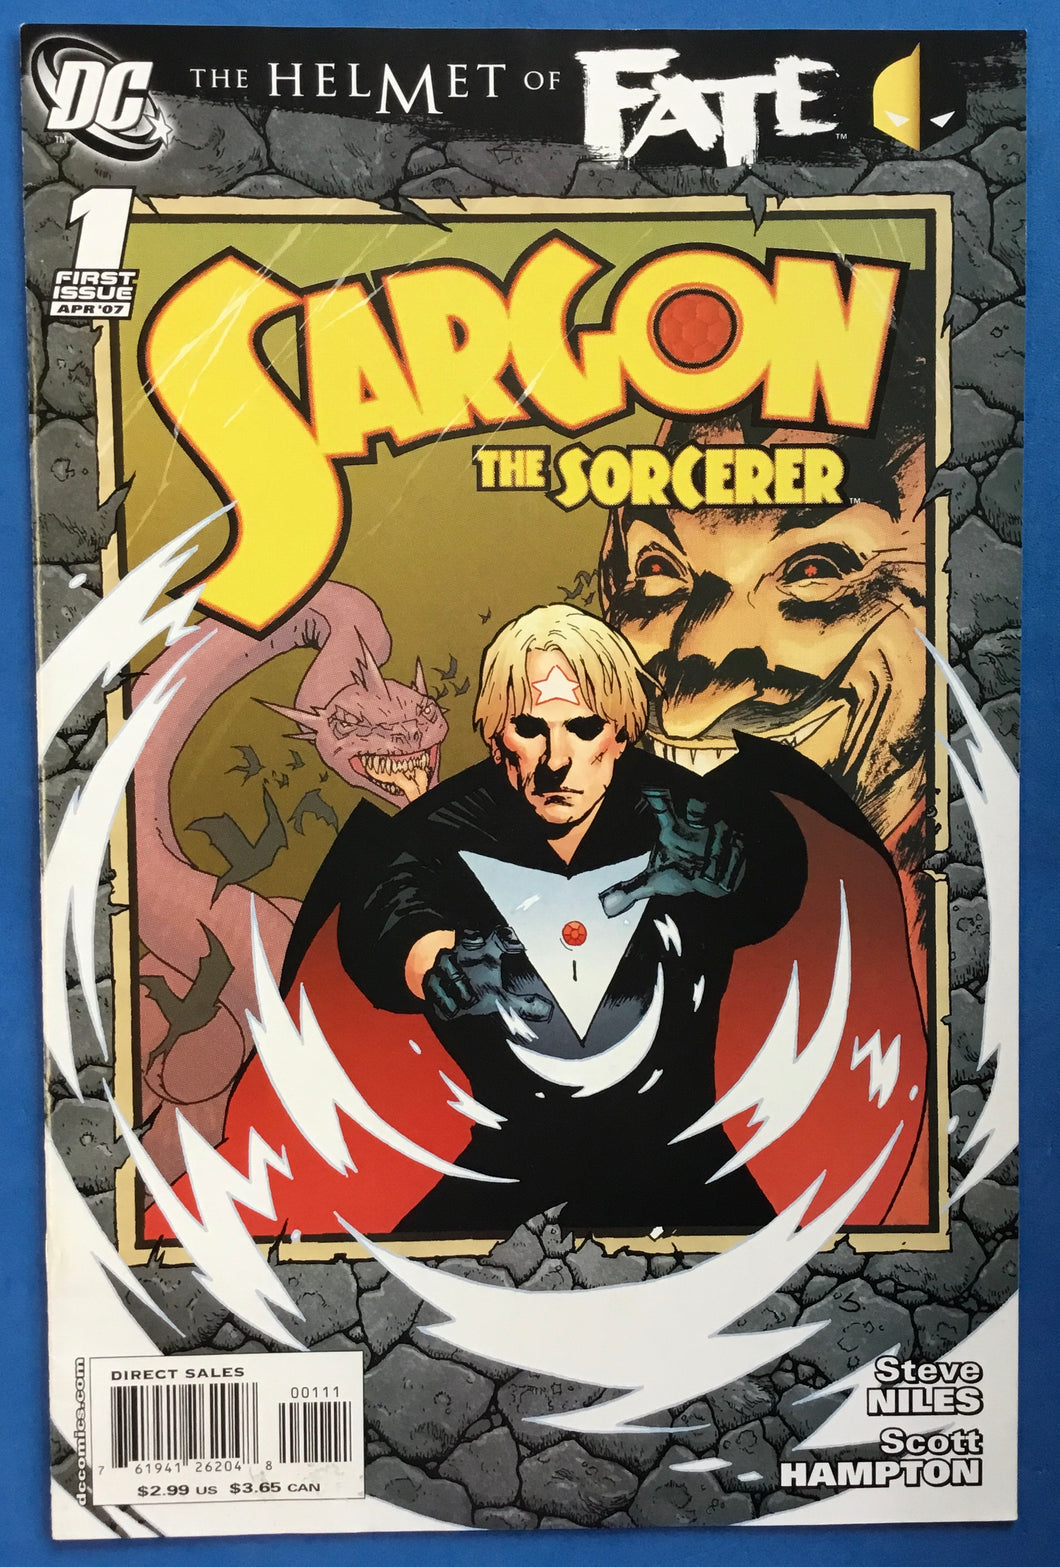 The Helmet of Fate: Sargon the Sorcerer No. #1 2007 DC Comics